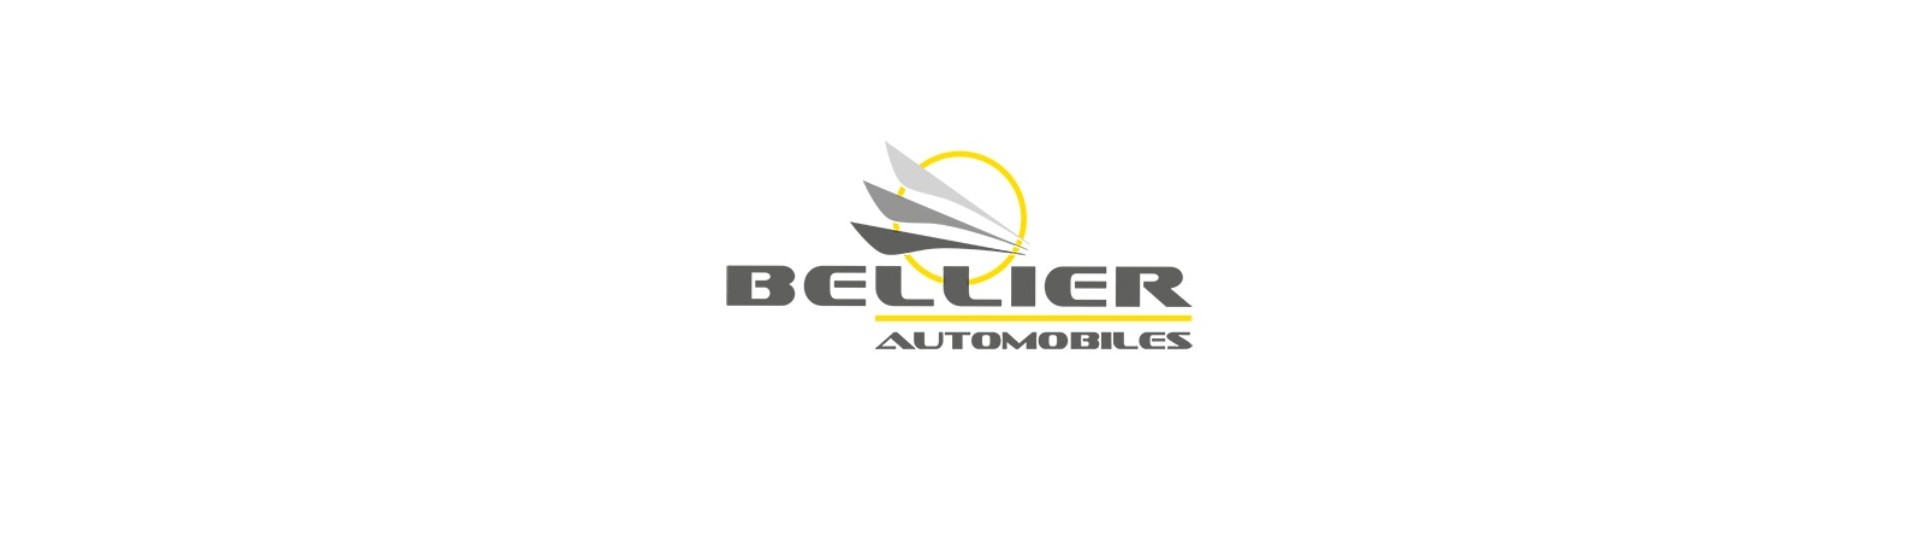 Moottorivalaisimet parhaalla hinnalla ilman lupaa Bellier